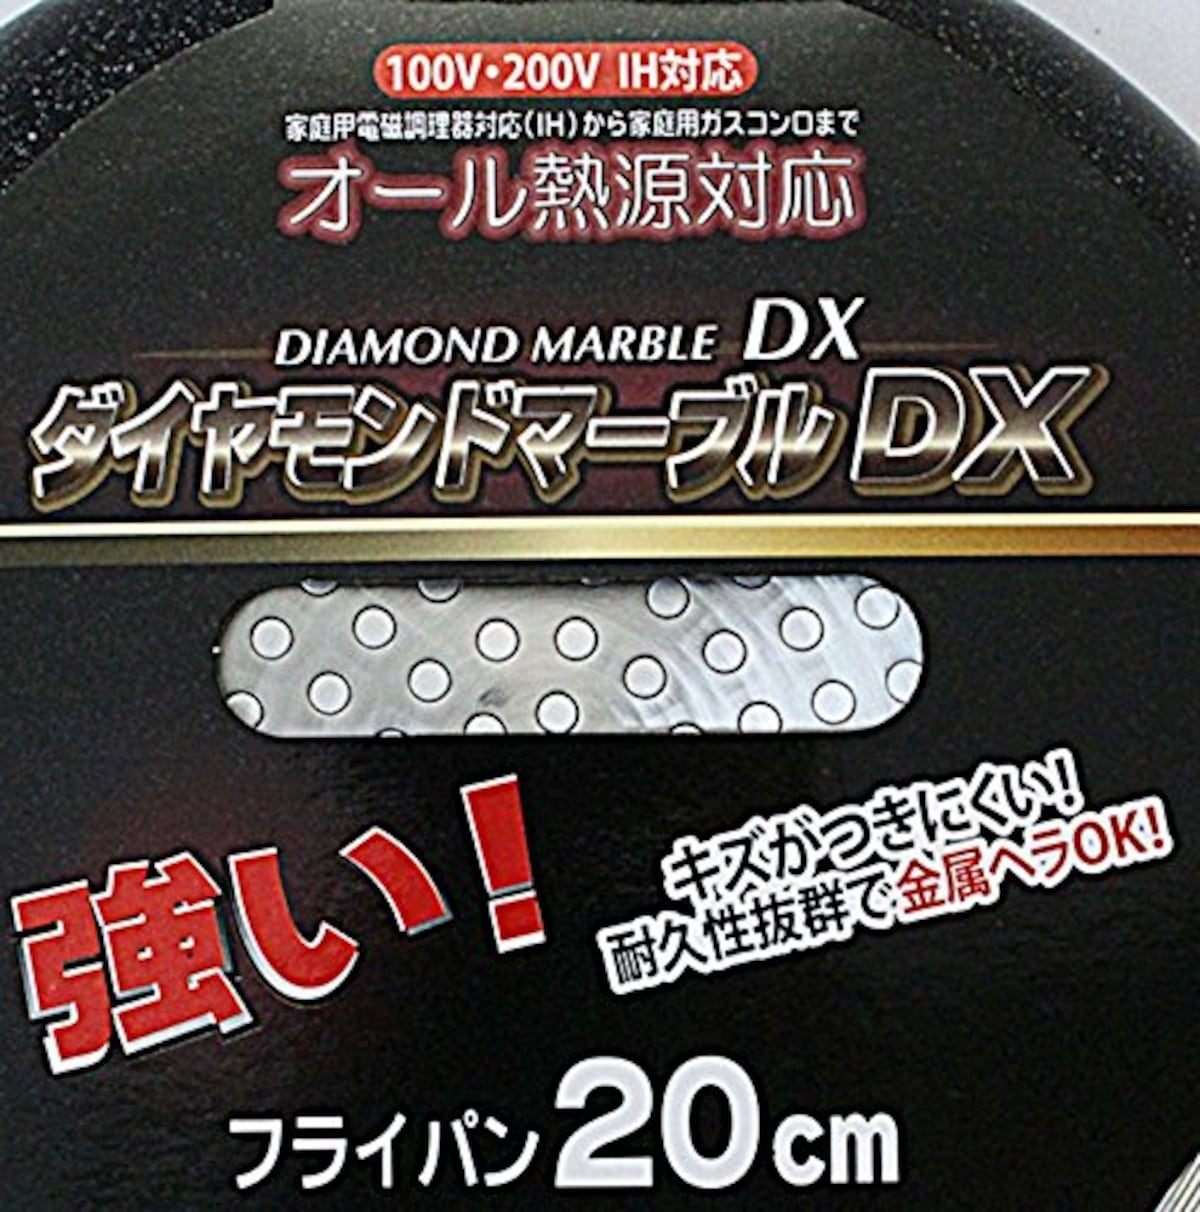  ナンセンジャパン フライパン ダイヤモンドマーブルDX 20cm IH対応 ブラック画像5 